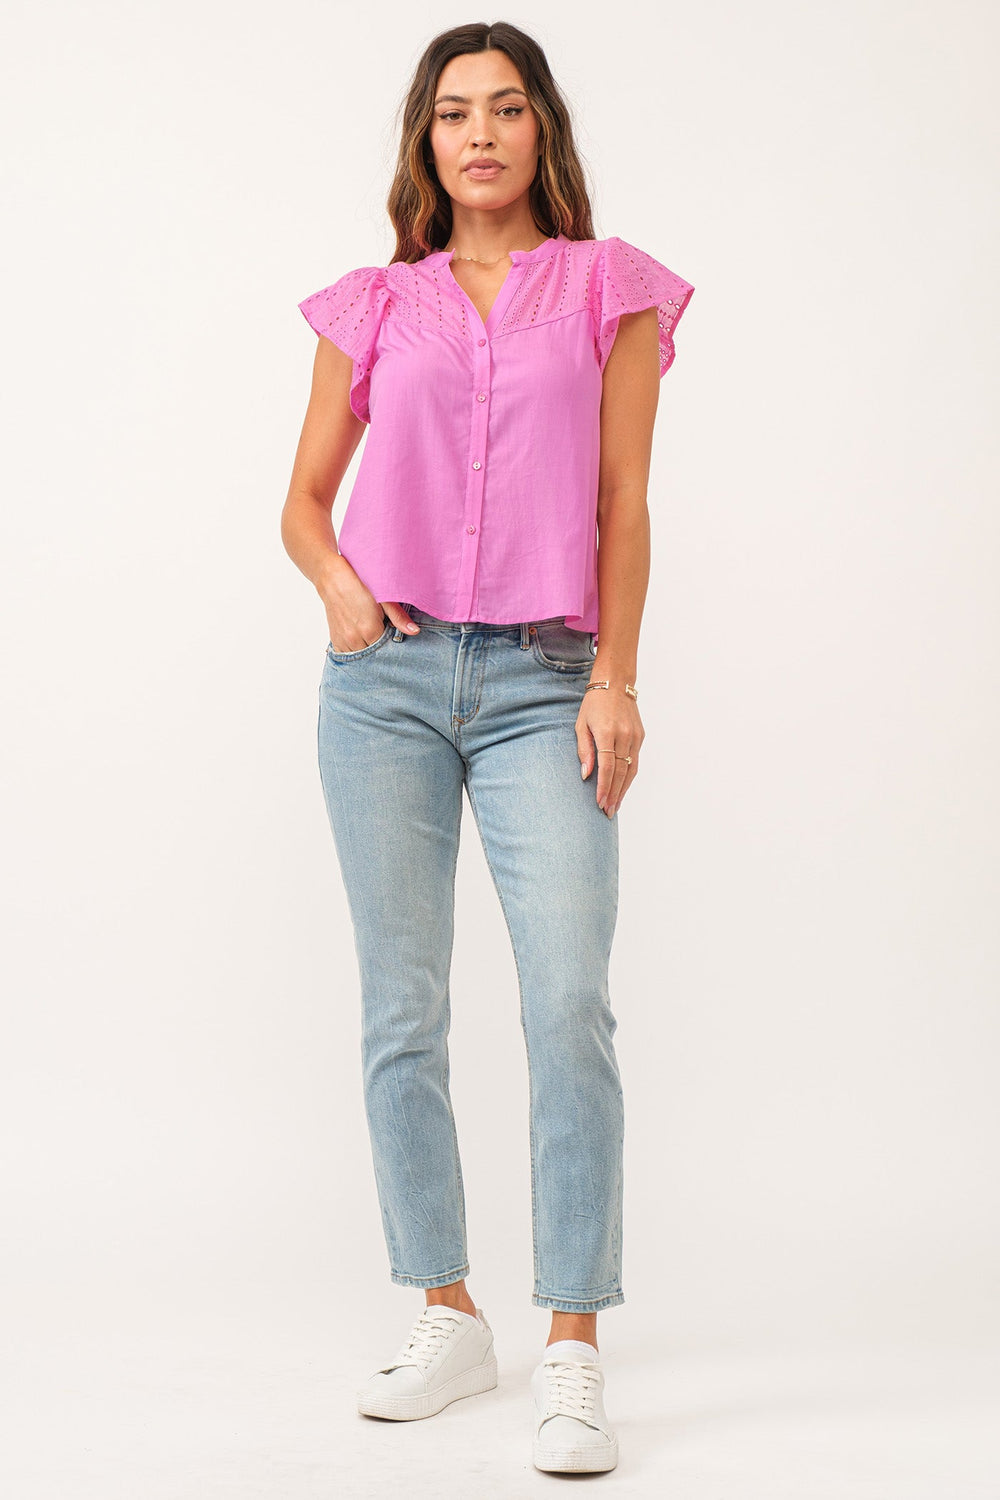 amy-embroidered-yoke-shirt-carnation-pink